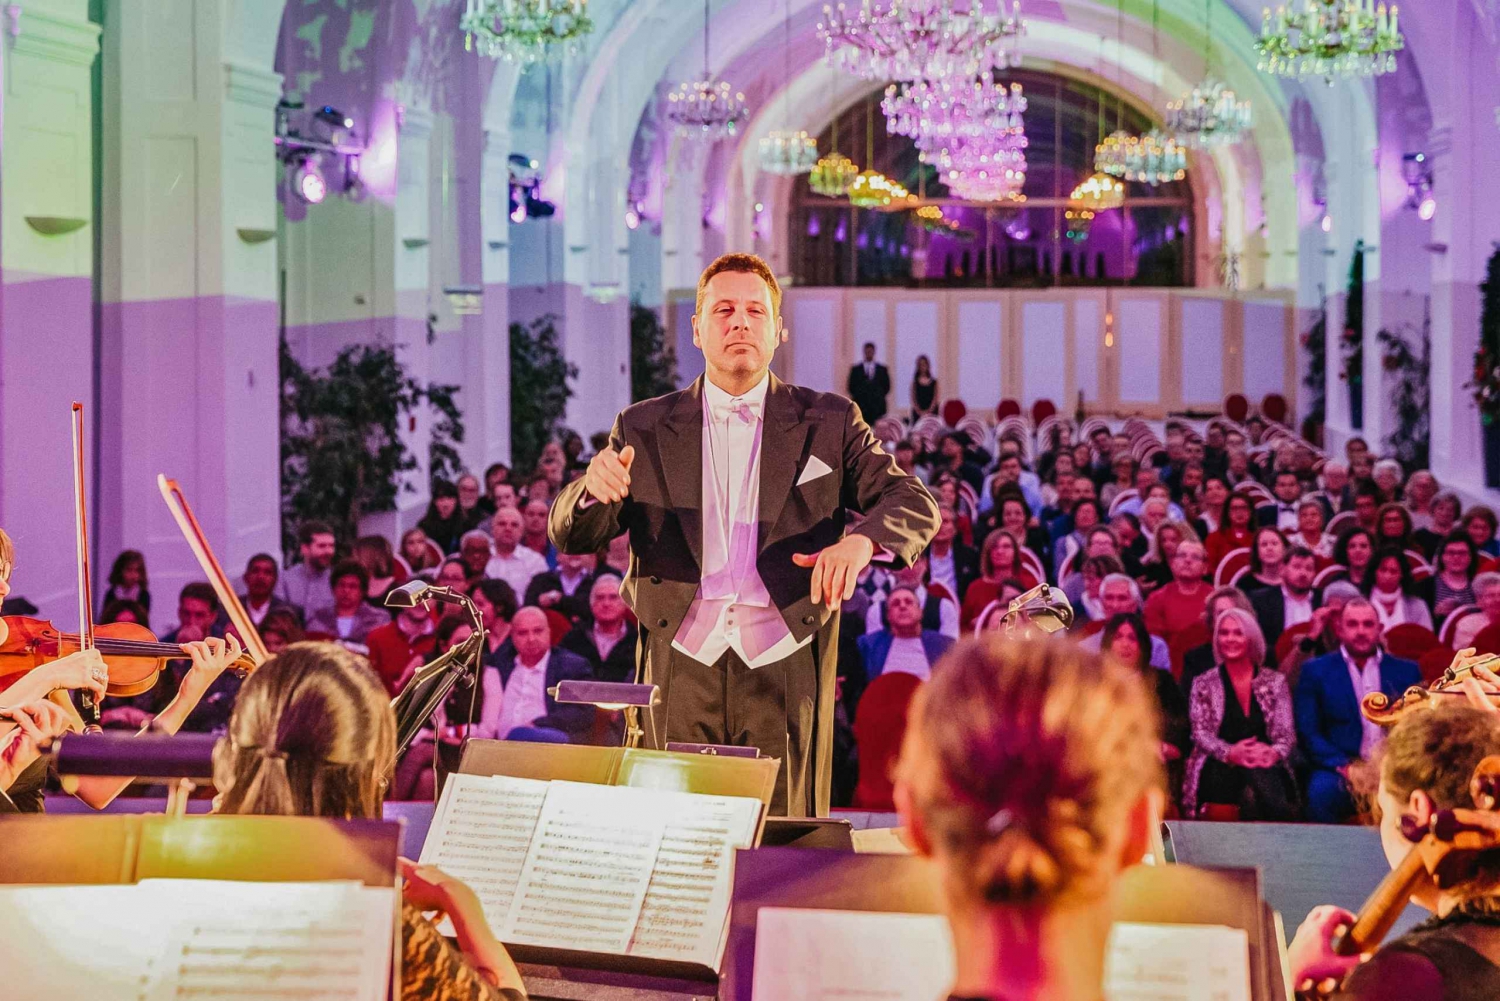 Vienna: Concerto di Mozart e Strauss a Schoenbrunn